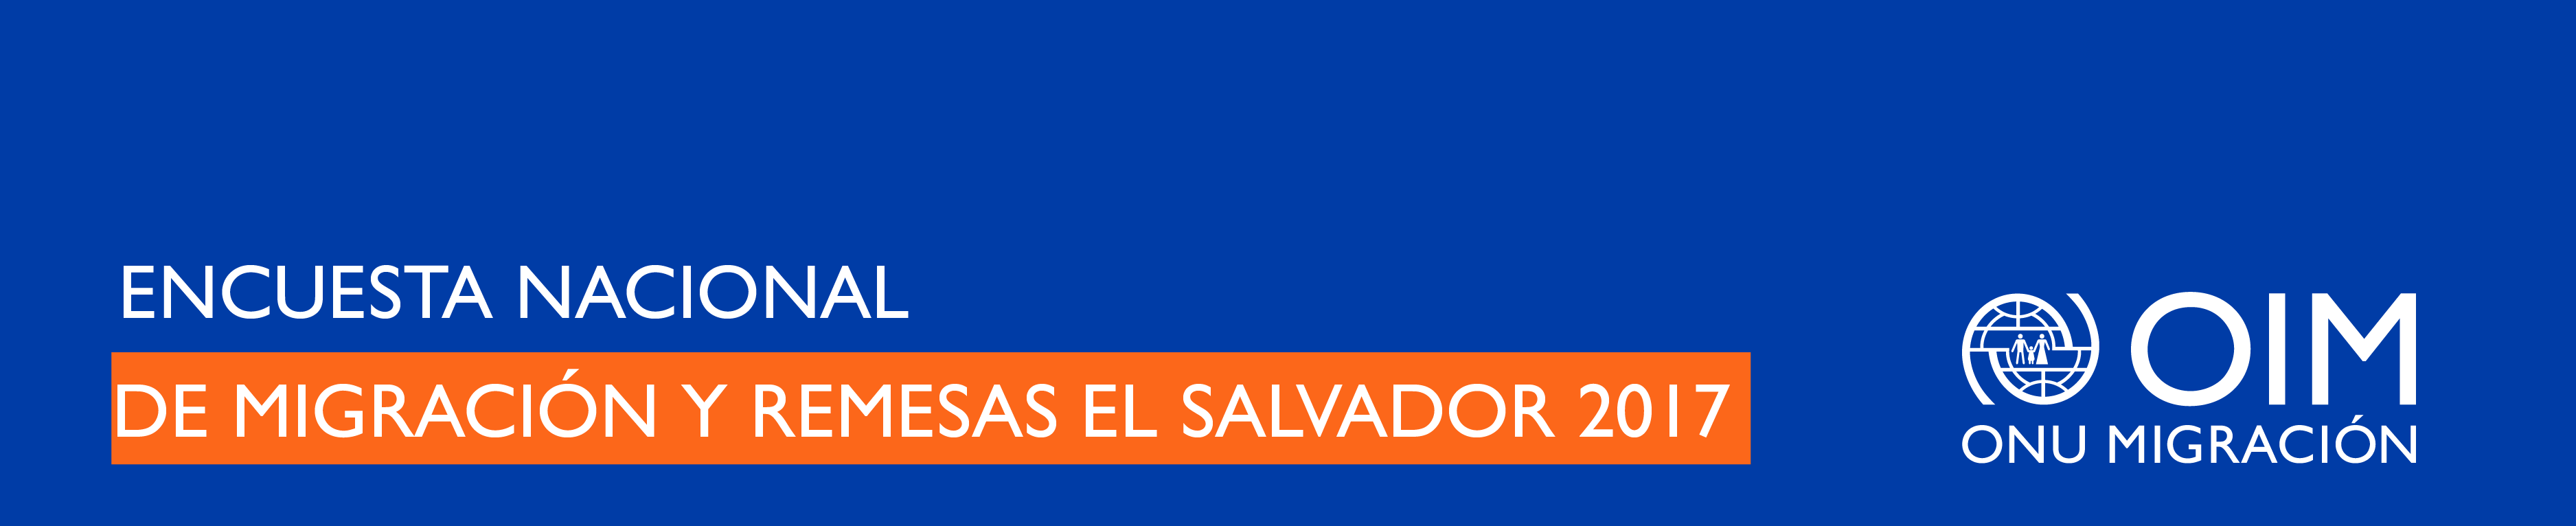 Encuesta Nacional de Migración y Remesas El Salvador 2017